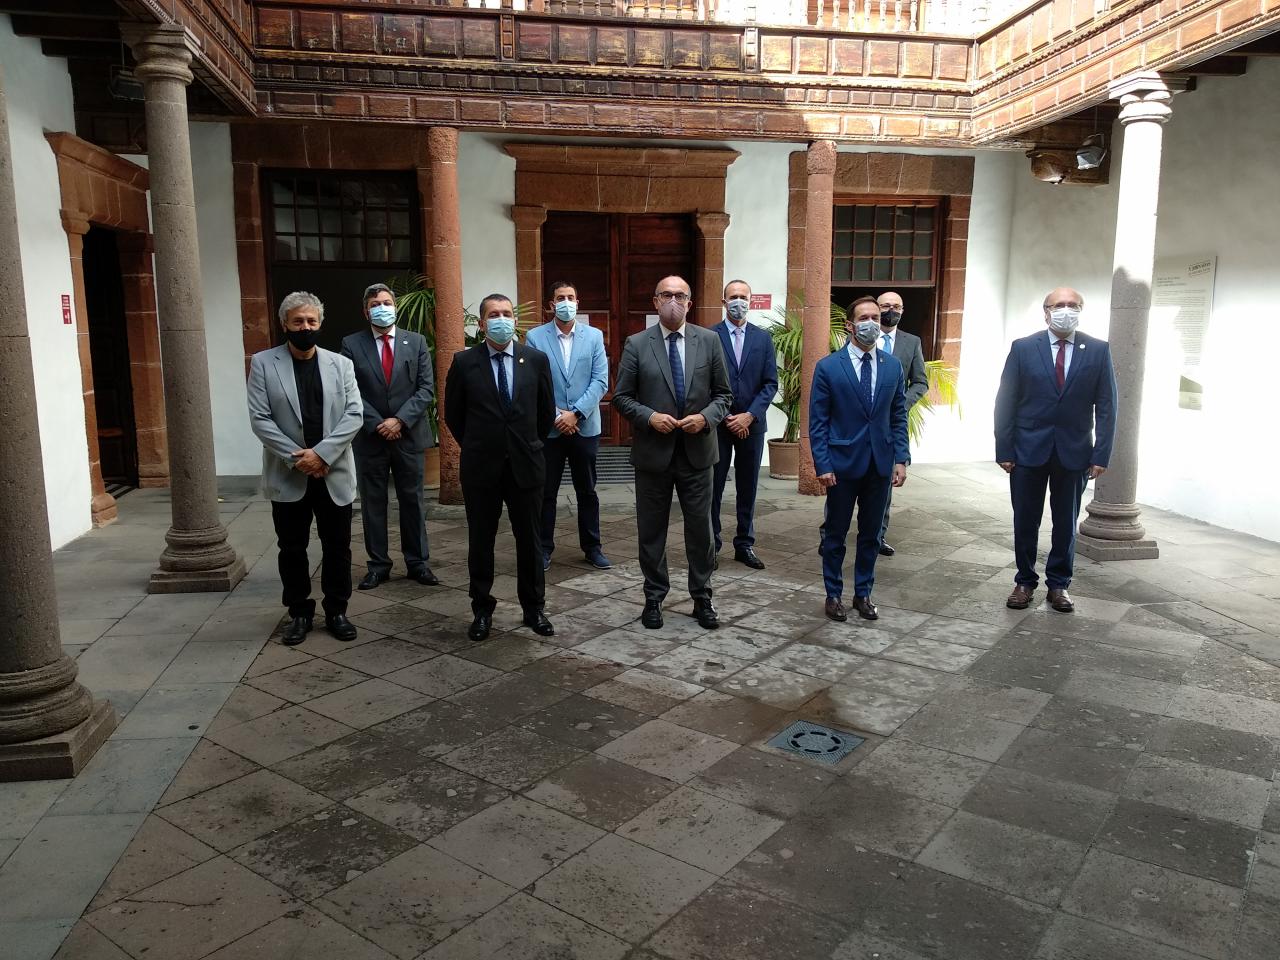 Algunas de las autoridades políticas y representantes del IAC que han acudido a la inauguración del Paseo de las Estrellas de la Ciencia de La Palma. Crédito: Aarón García Botín (IAC)